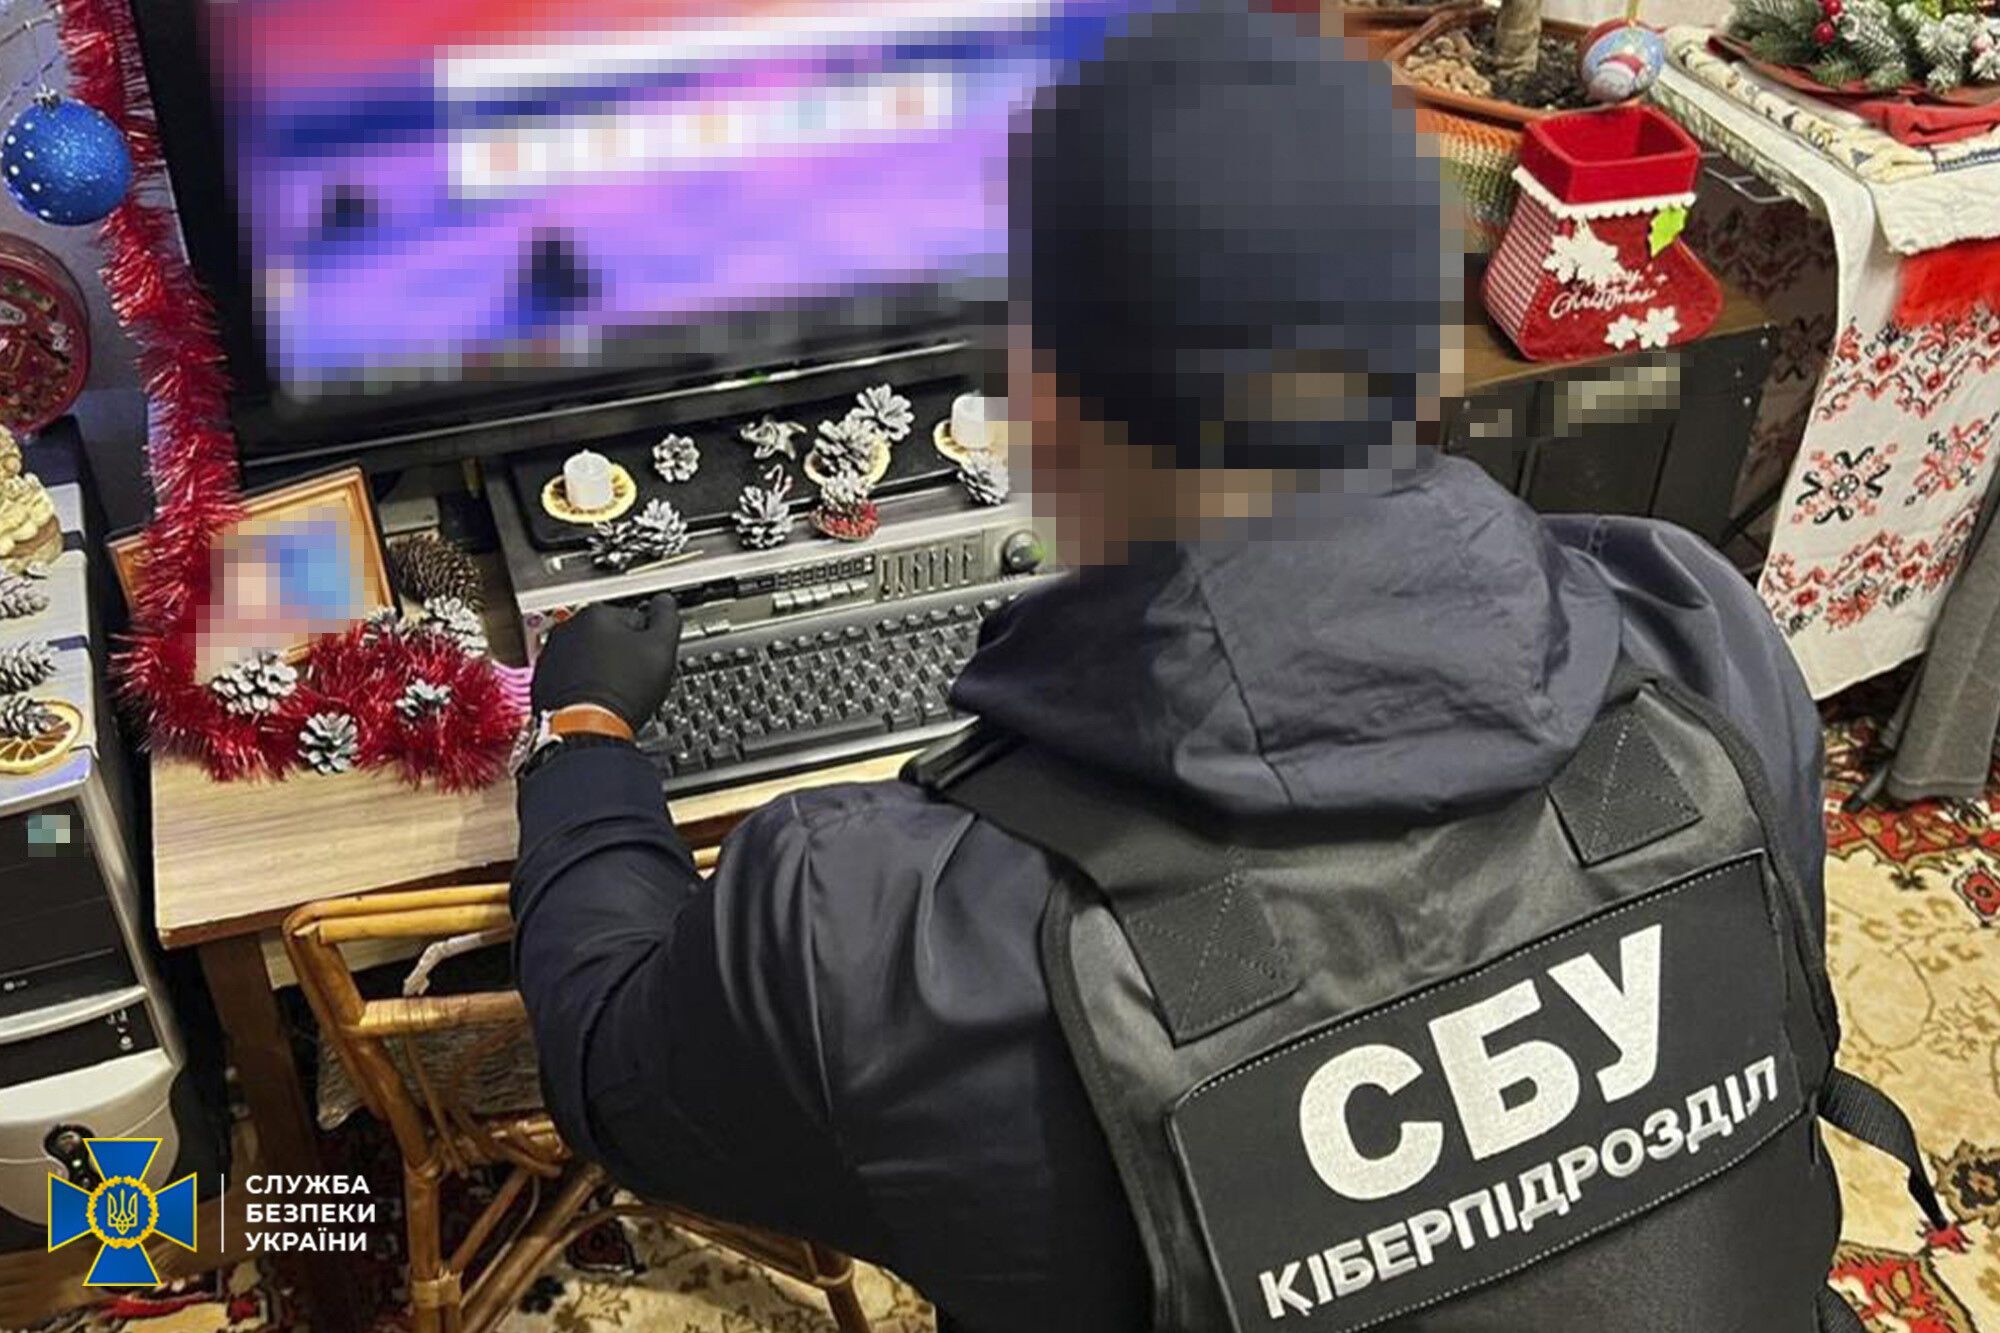 Депутат и блогерша из медиа-пула Медведчука: СБУ разоблачила агитаторов Кремля